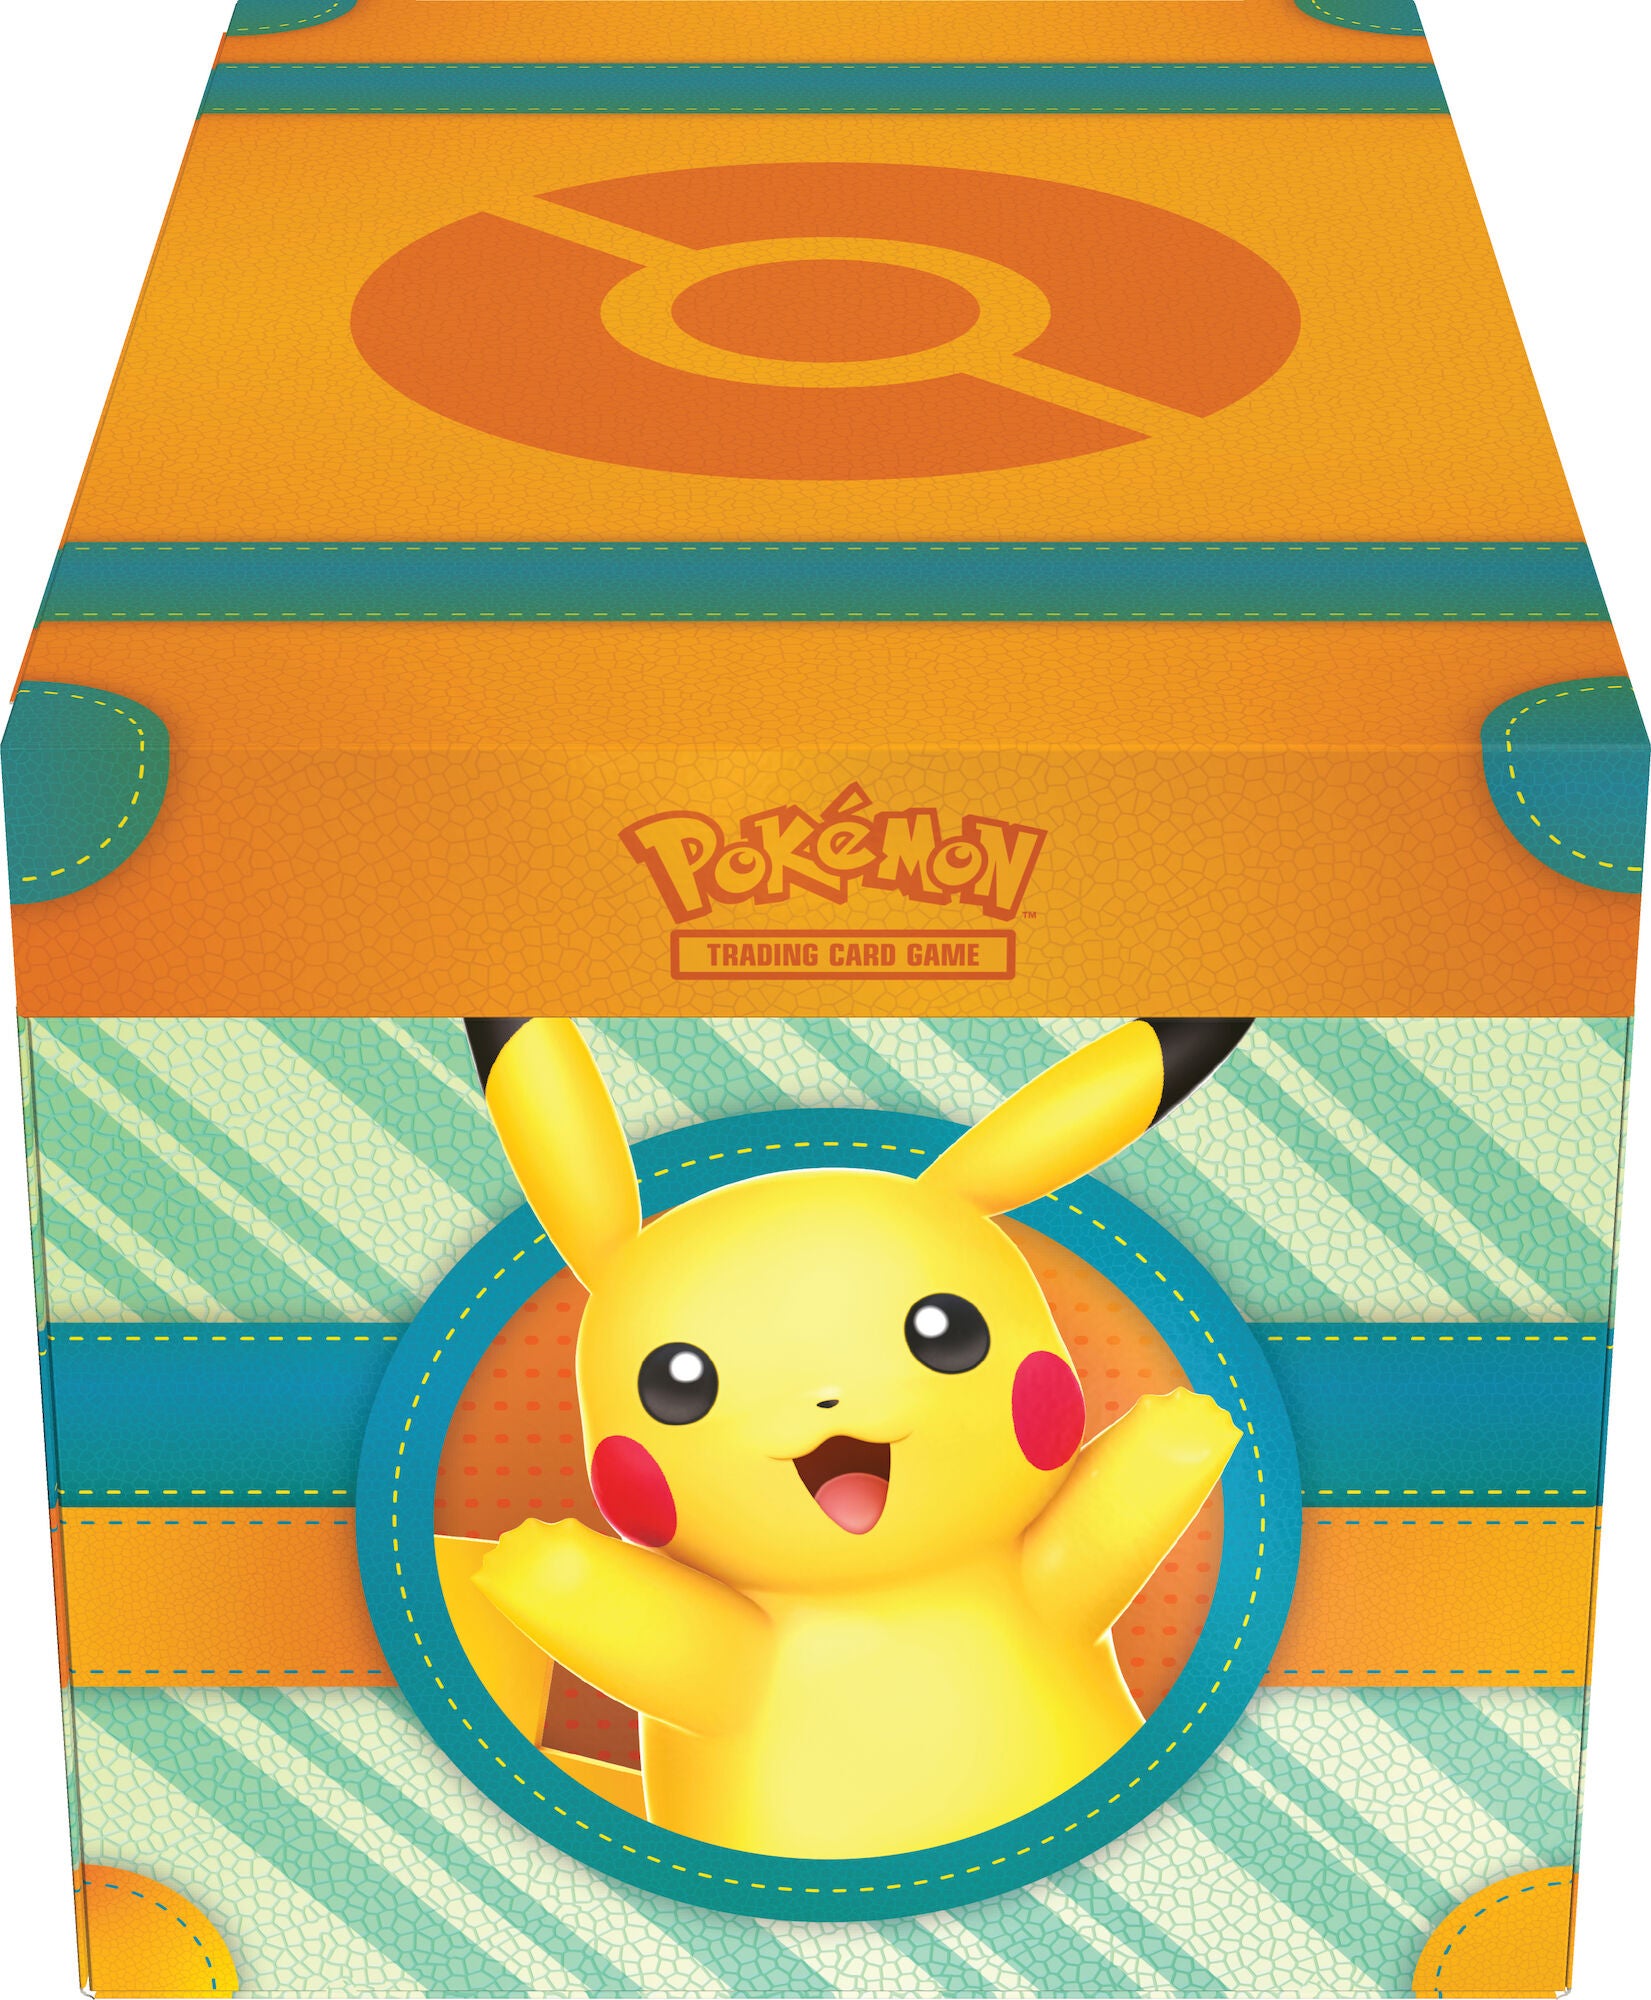 Pokémon Paldea Adventure Chest Sammelbox mit Pikachu Squishy-Figur von Pokémon